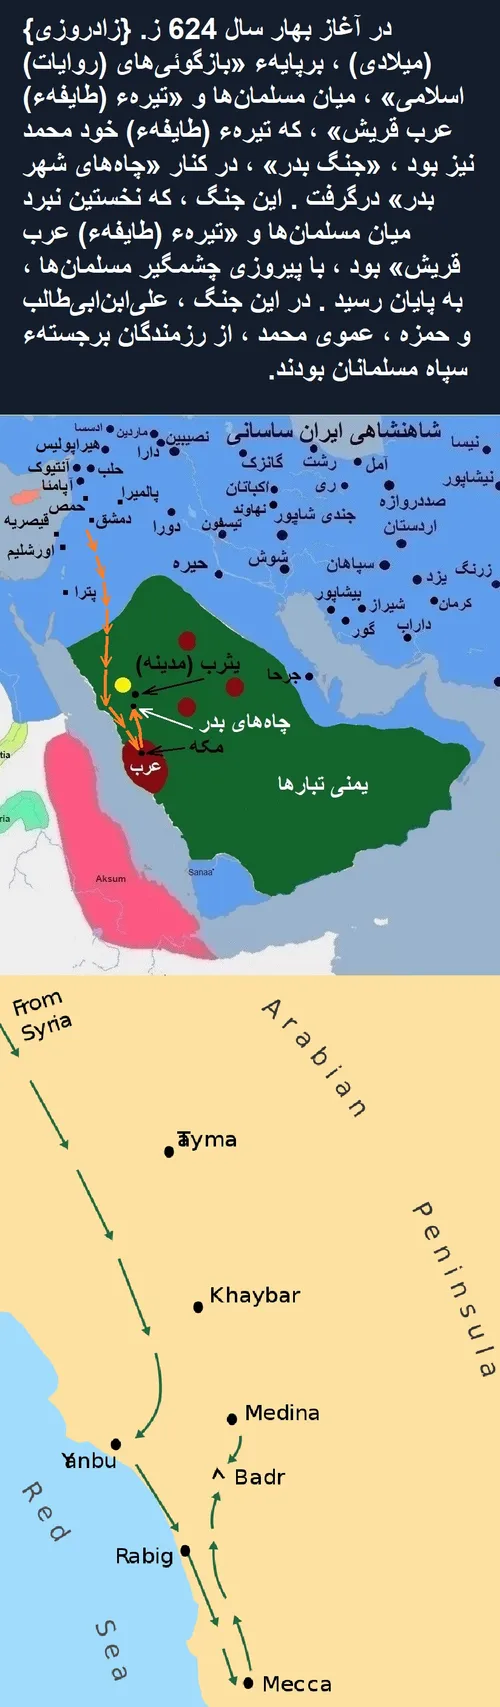 تاریخ کوتاه ایران و جهان-773 (ویرایش 2)